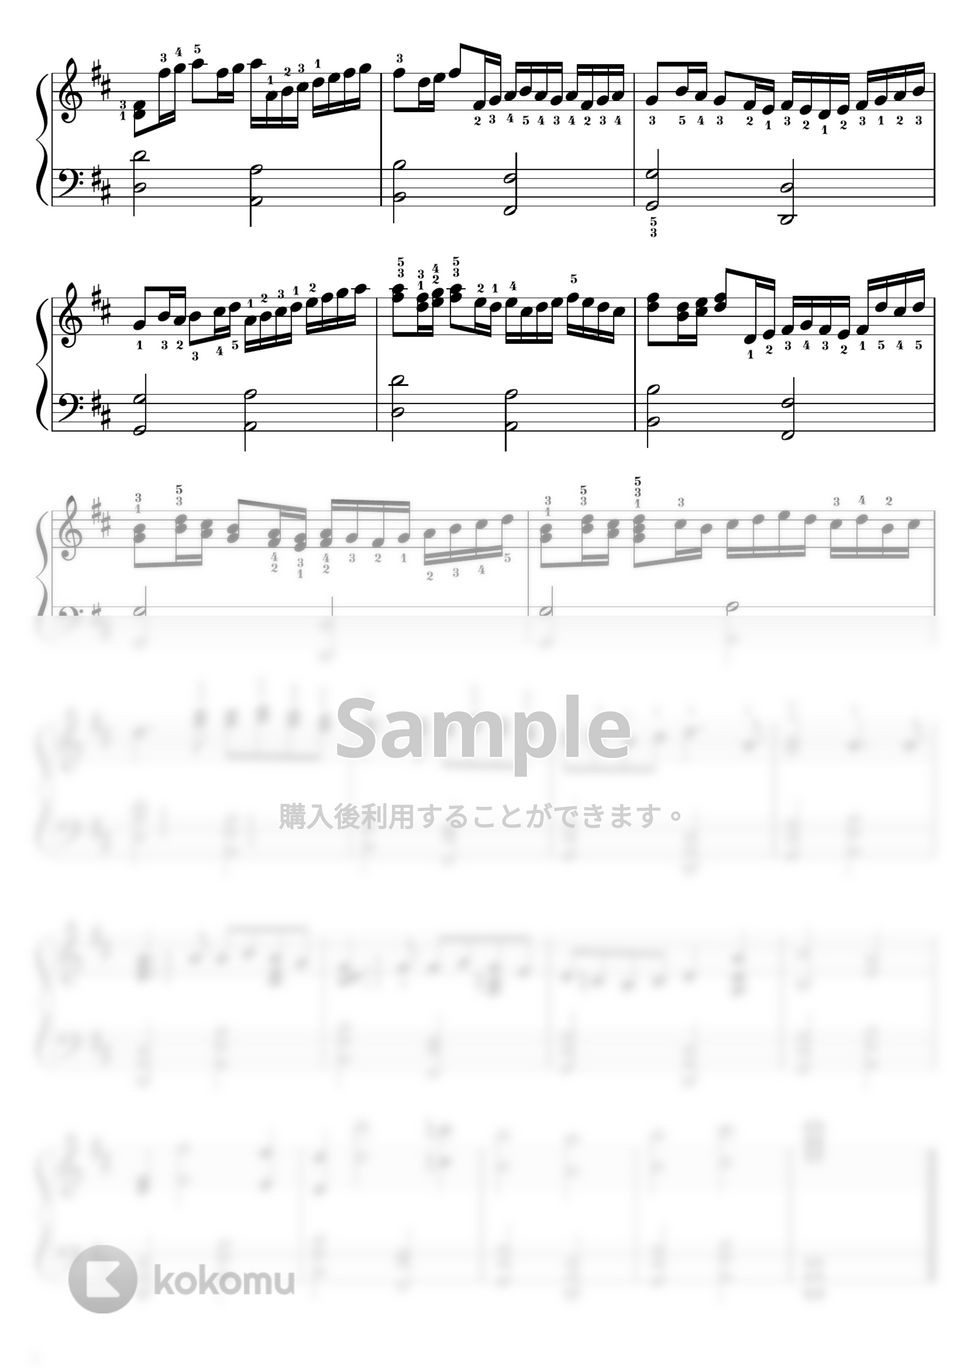 パッヘルベル - 【初級-中級】カノン/パッヘルベル/簡単＆弾き映え！ (パッヘルベル,カノン,CANON) by ピアノのせんせいの楽譜集